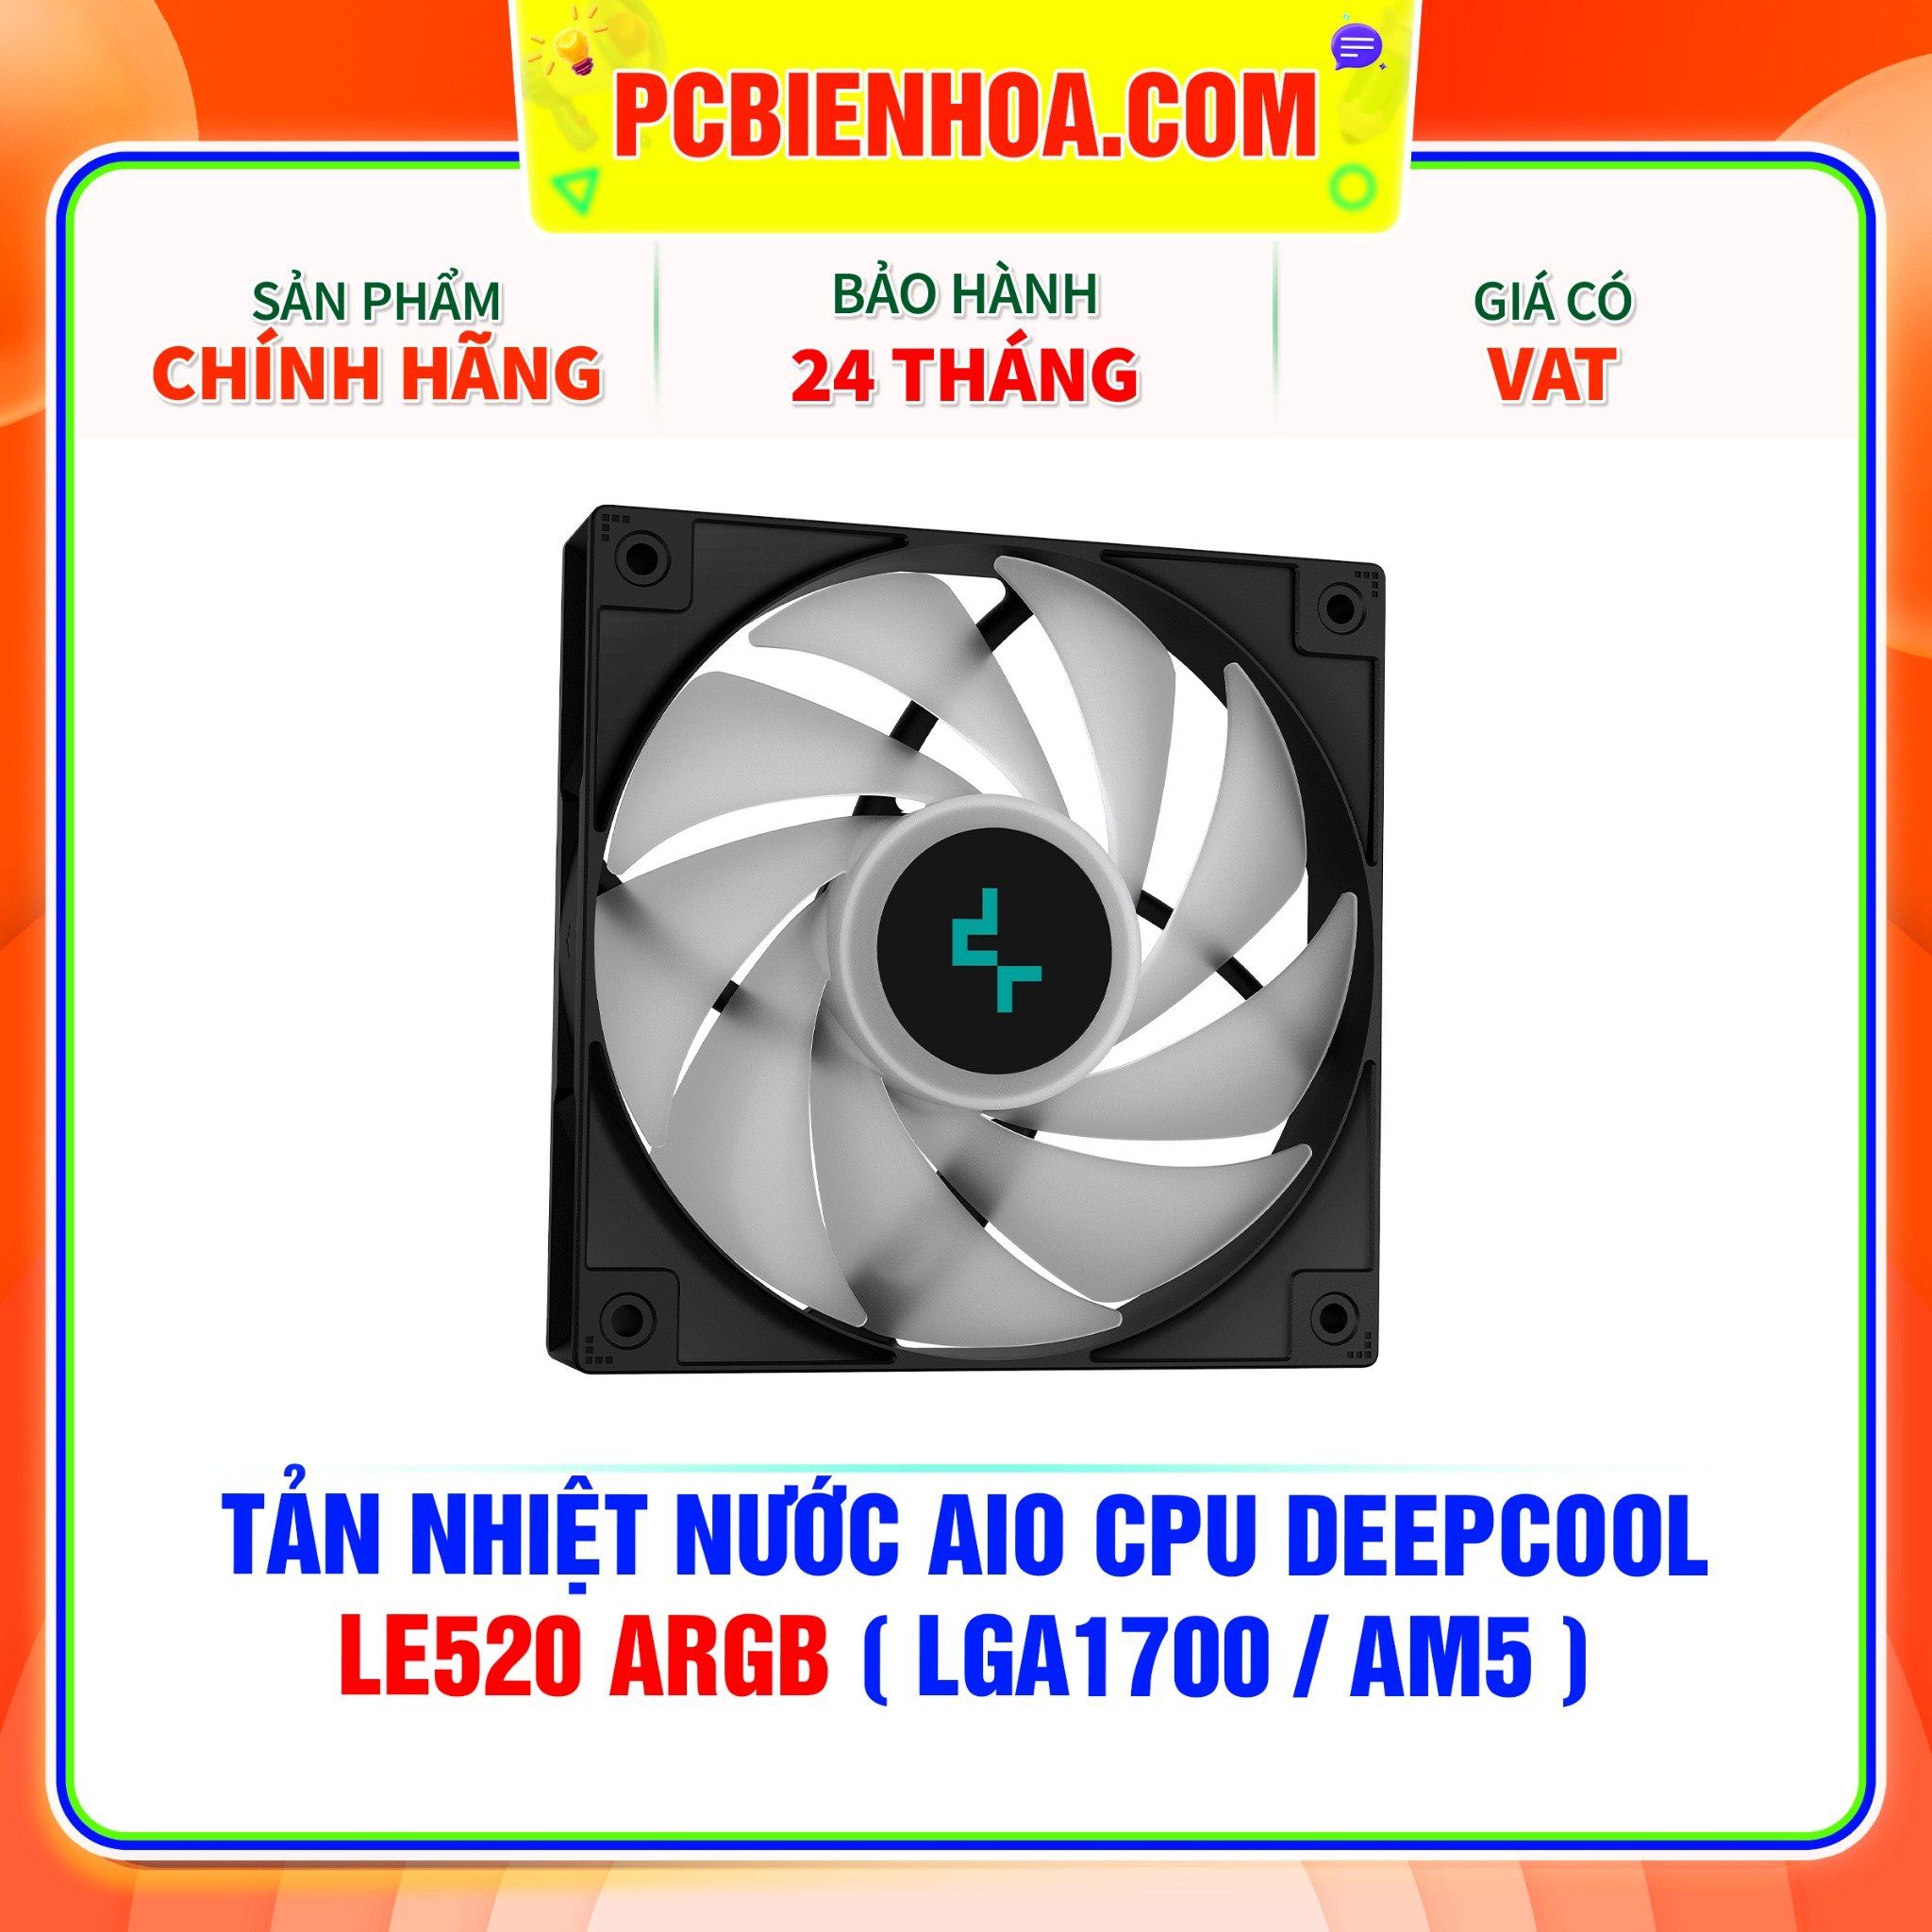  TẢN NHIỆT NƯỚC AIO CPU DEEPCOOL LE520 ARGB ( HỖ TRỢ SOCKET LGA1700 / AM5 ) 